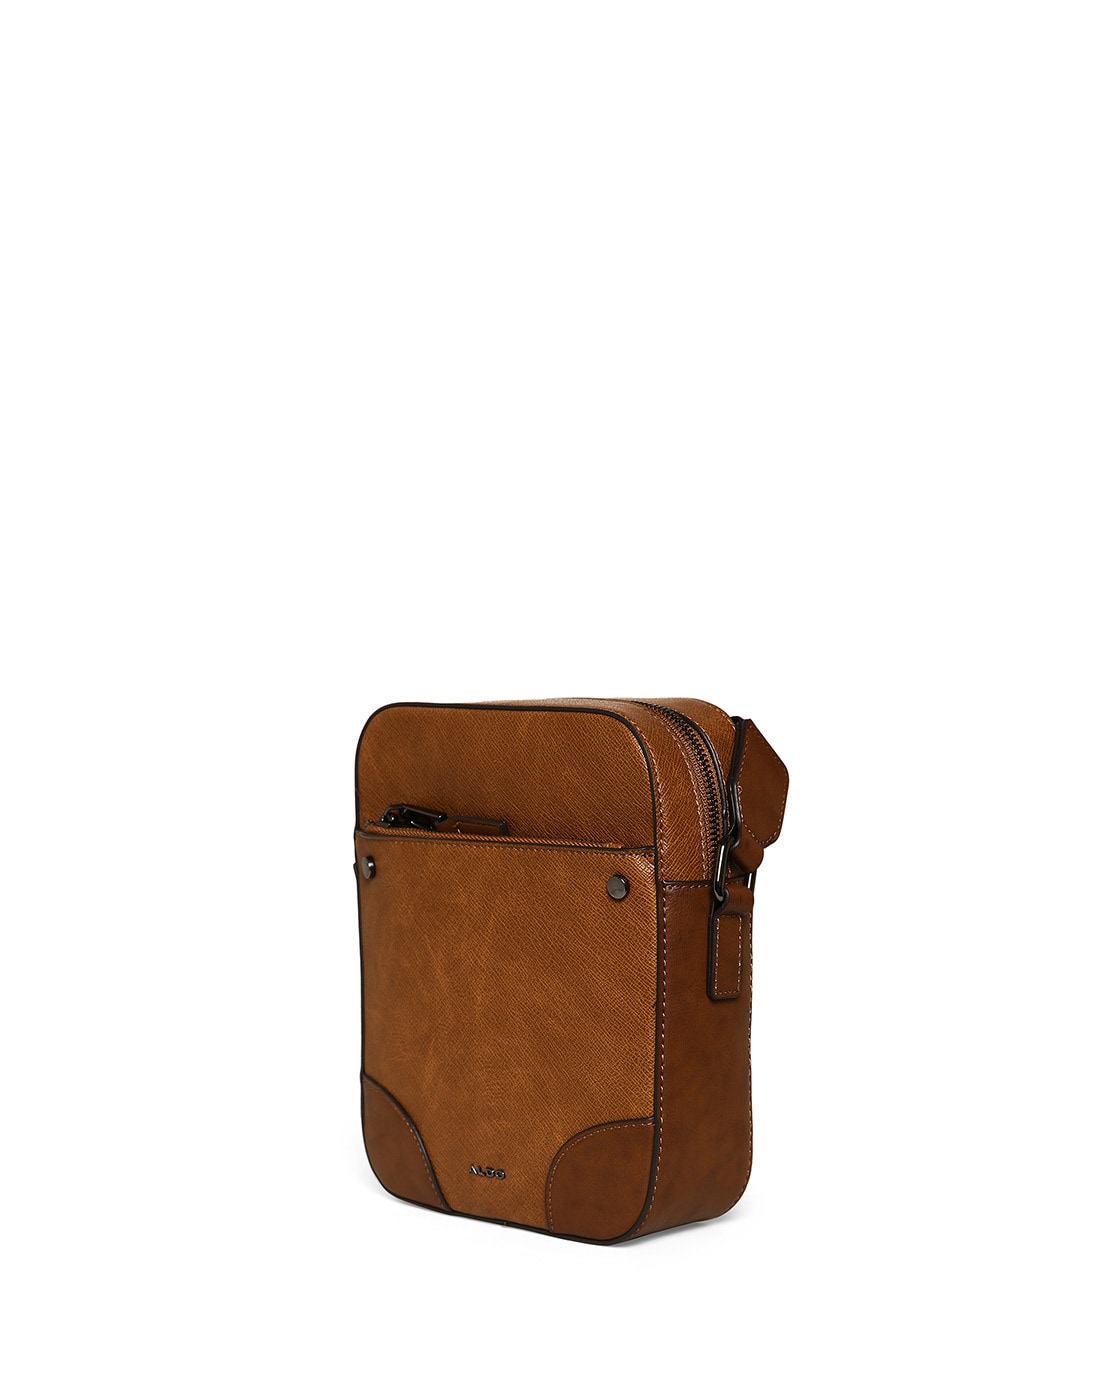 Share more than 159 aldo brown sling bag latest - 3tdesign.edu.vn